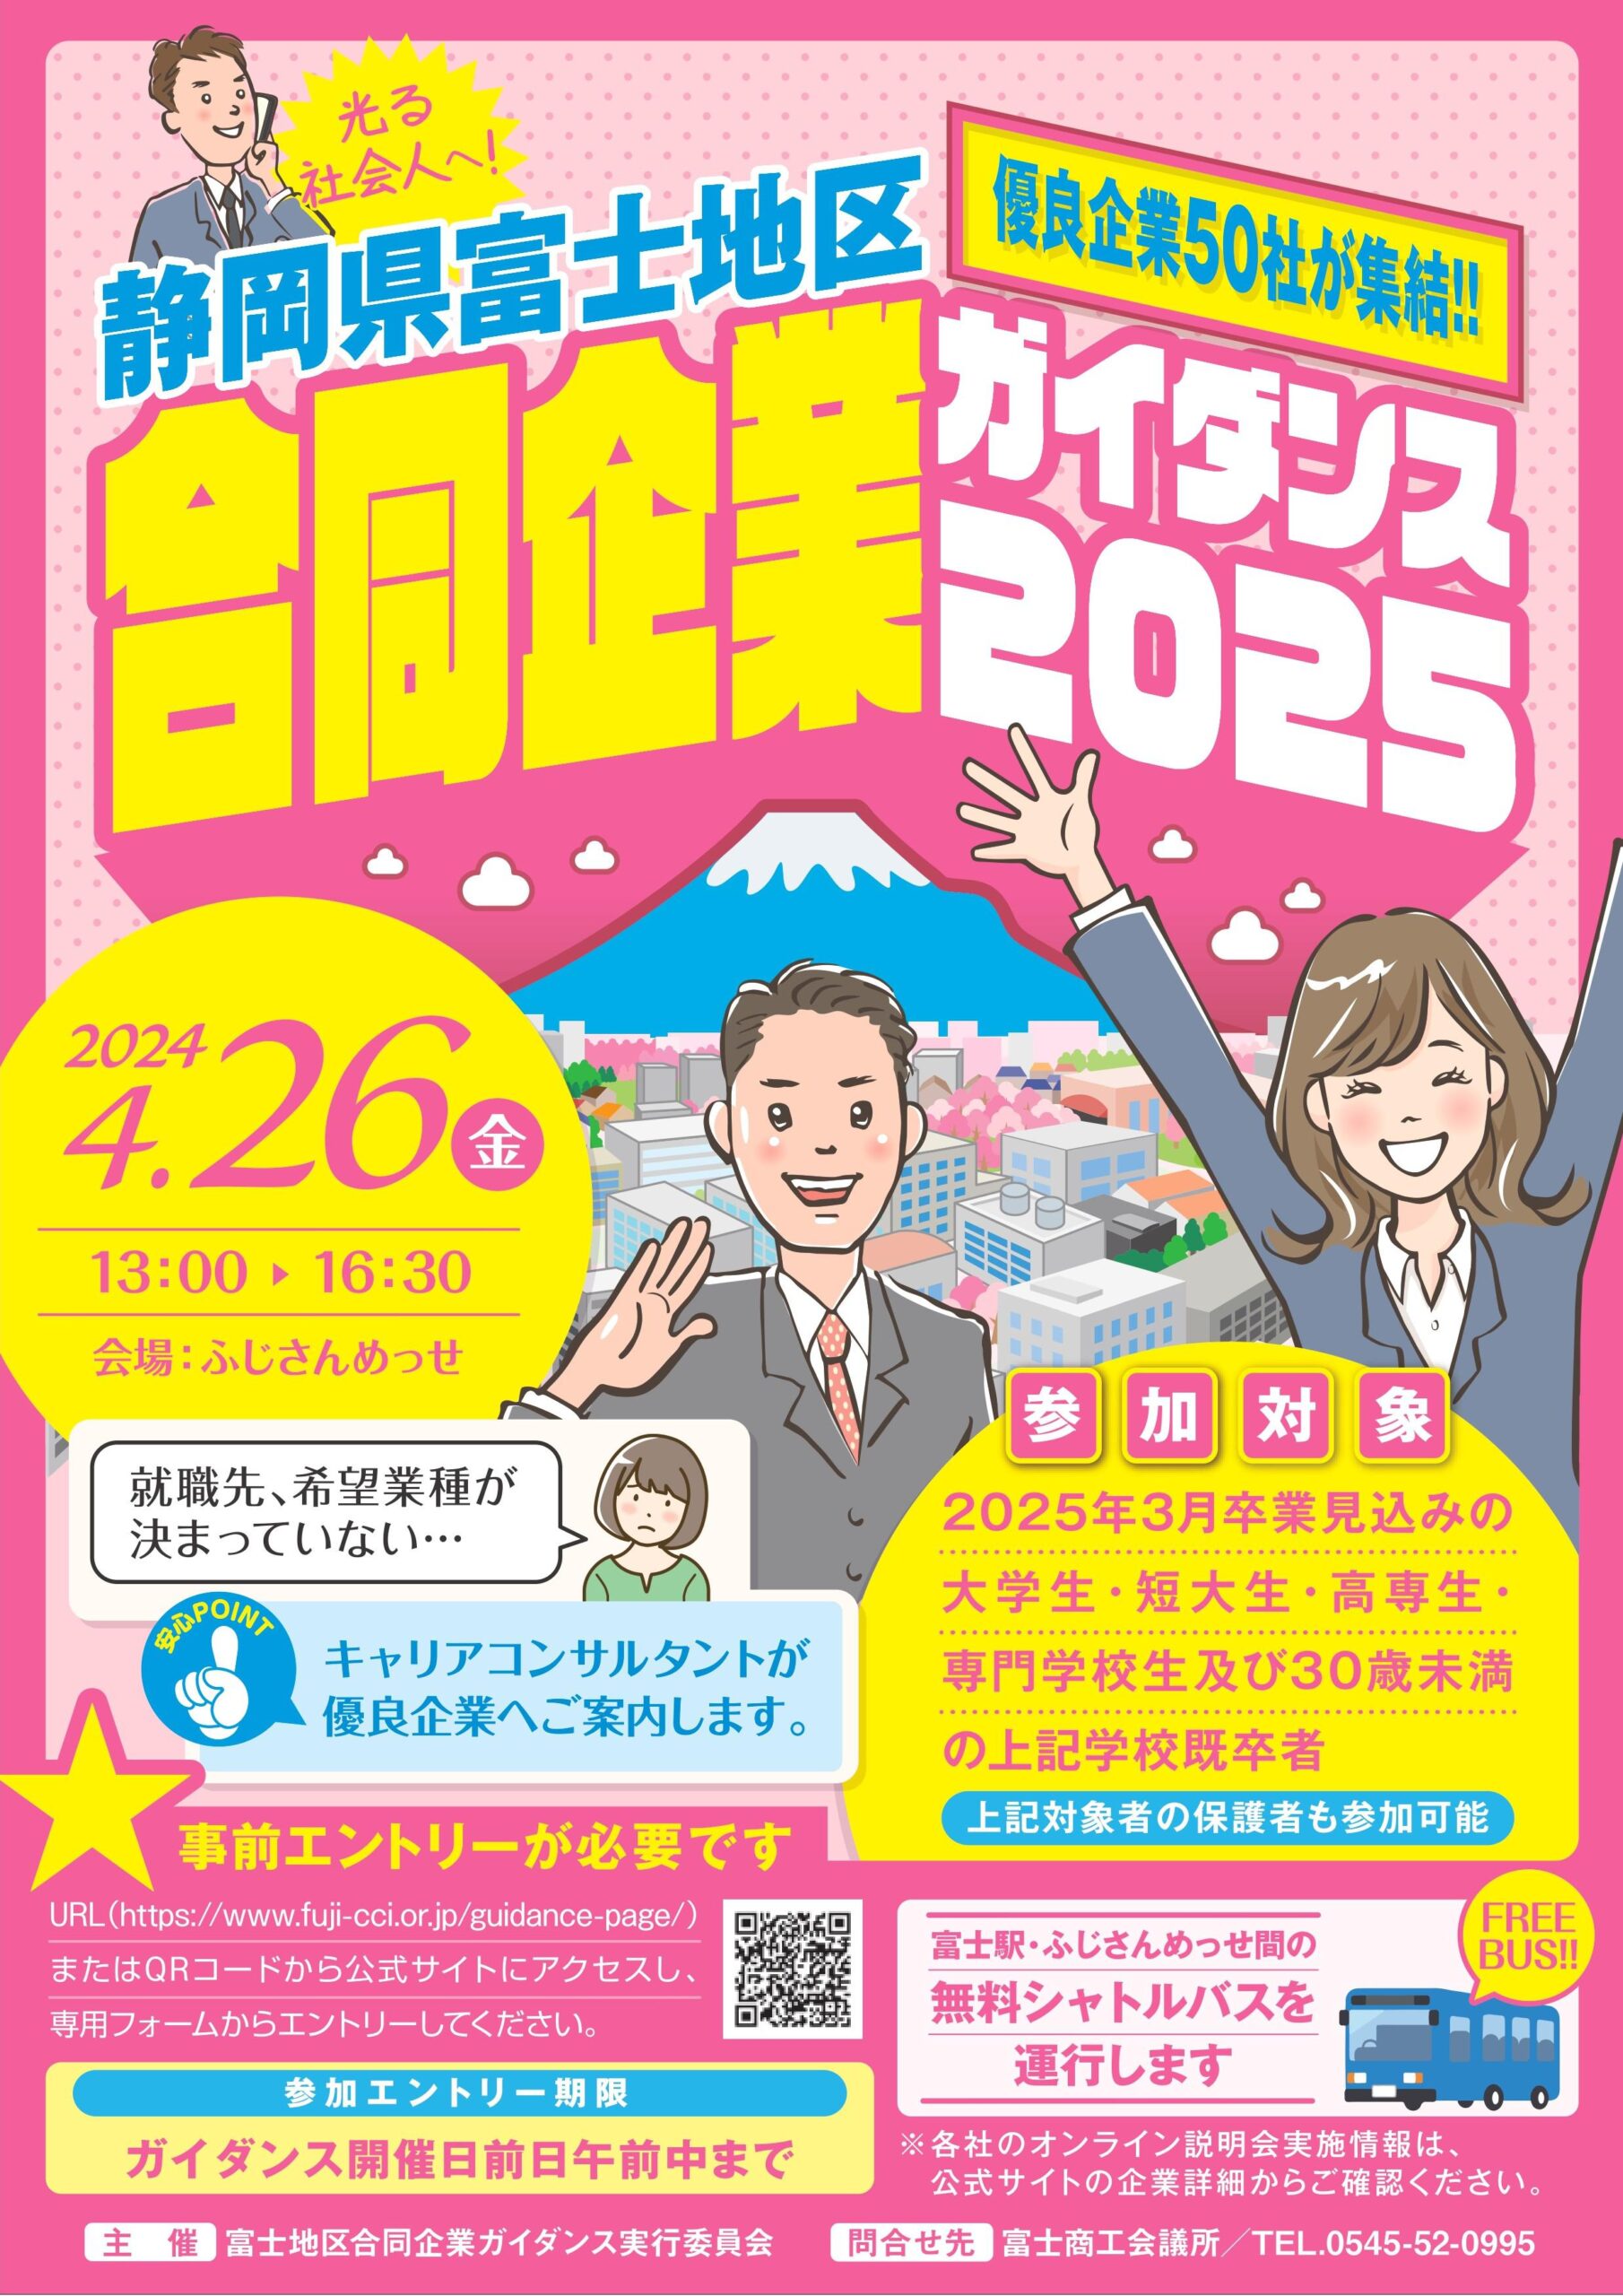 4/26(金) 富士地区合同企業ガイダンス2025（会場：ふじさんめっせ）参加